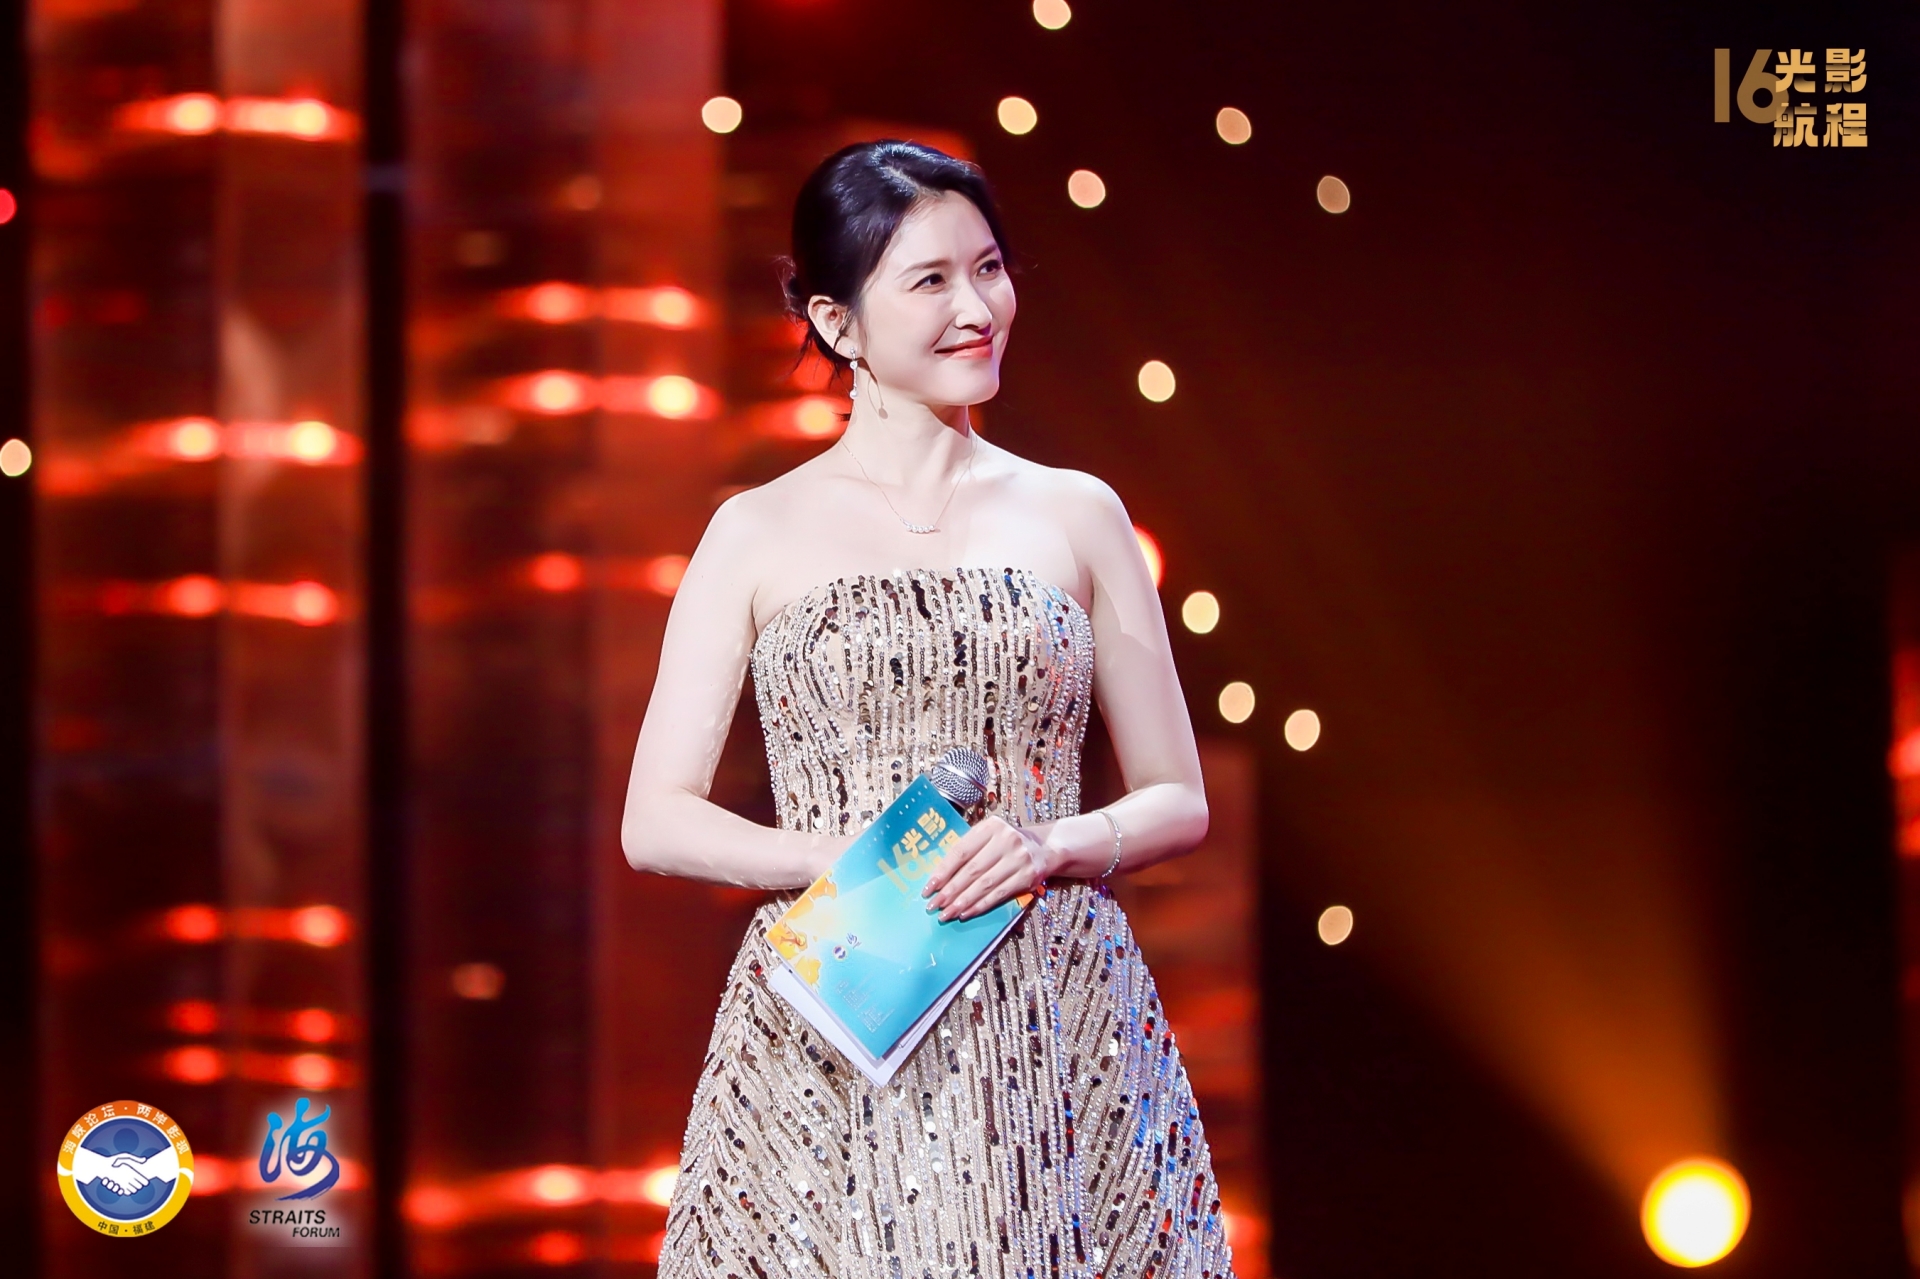 曾演出《海豚灣戀人》的台灣歌手徐潔兒任頒獎典禮主持人。圖/海峽影視季主辦單位提供